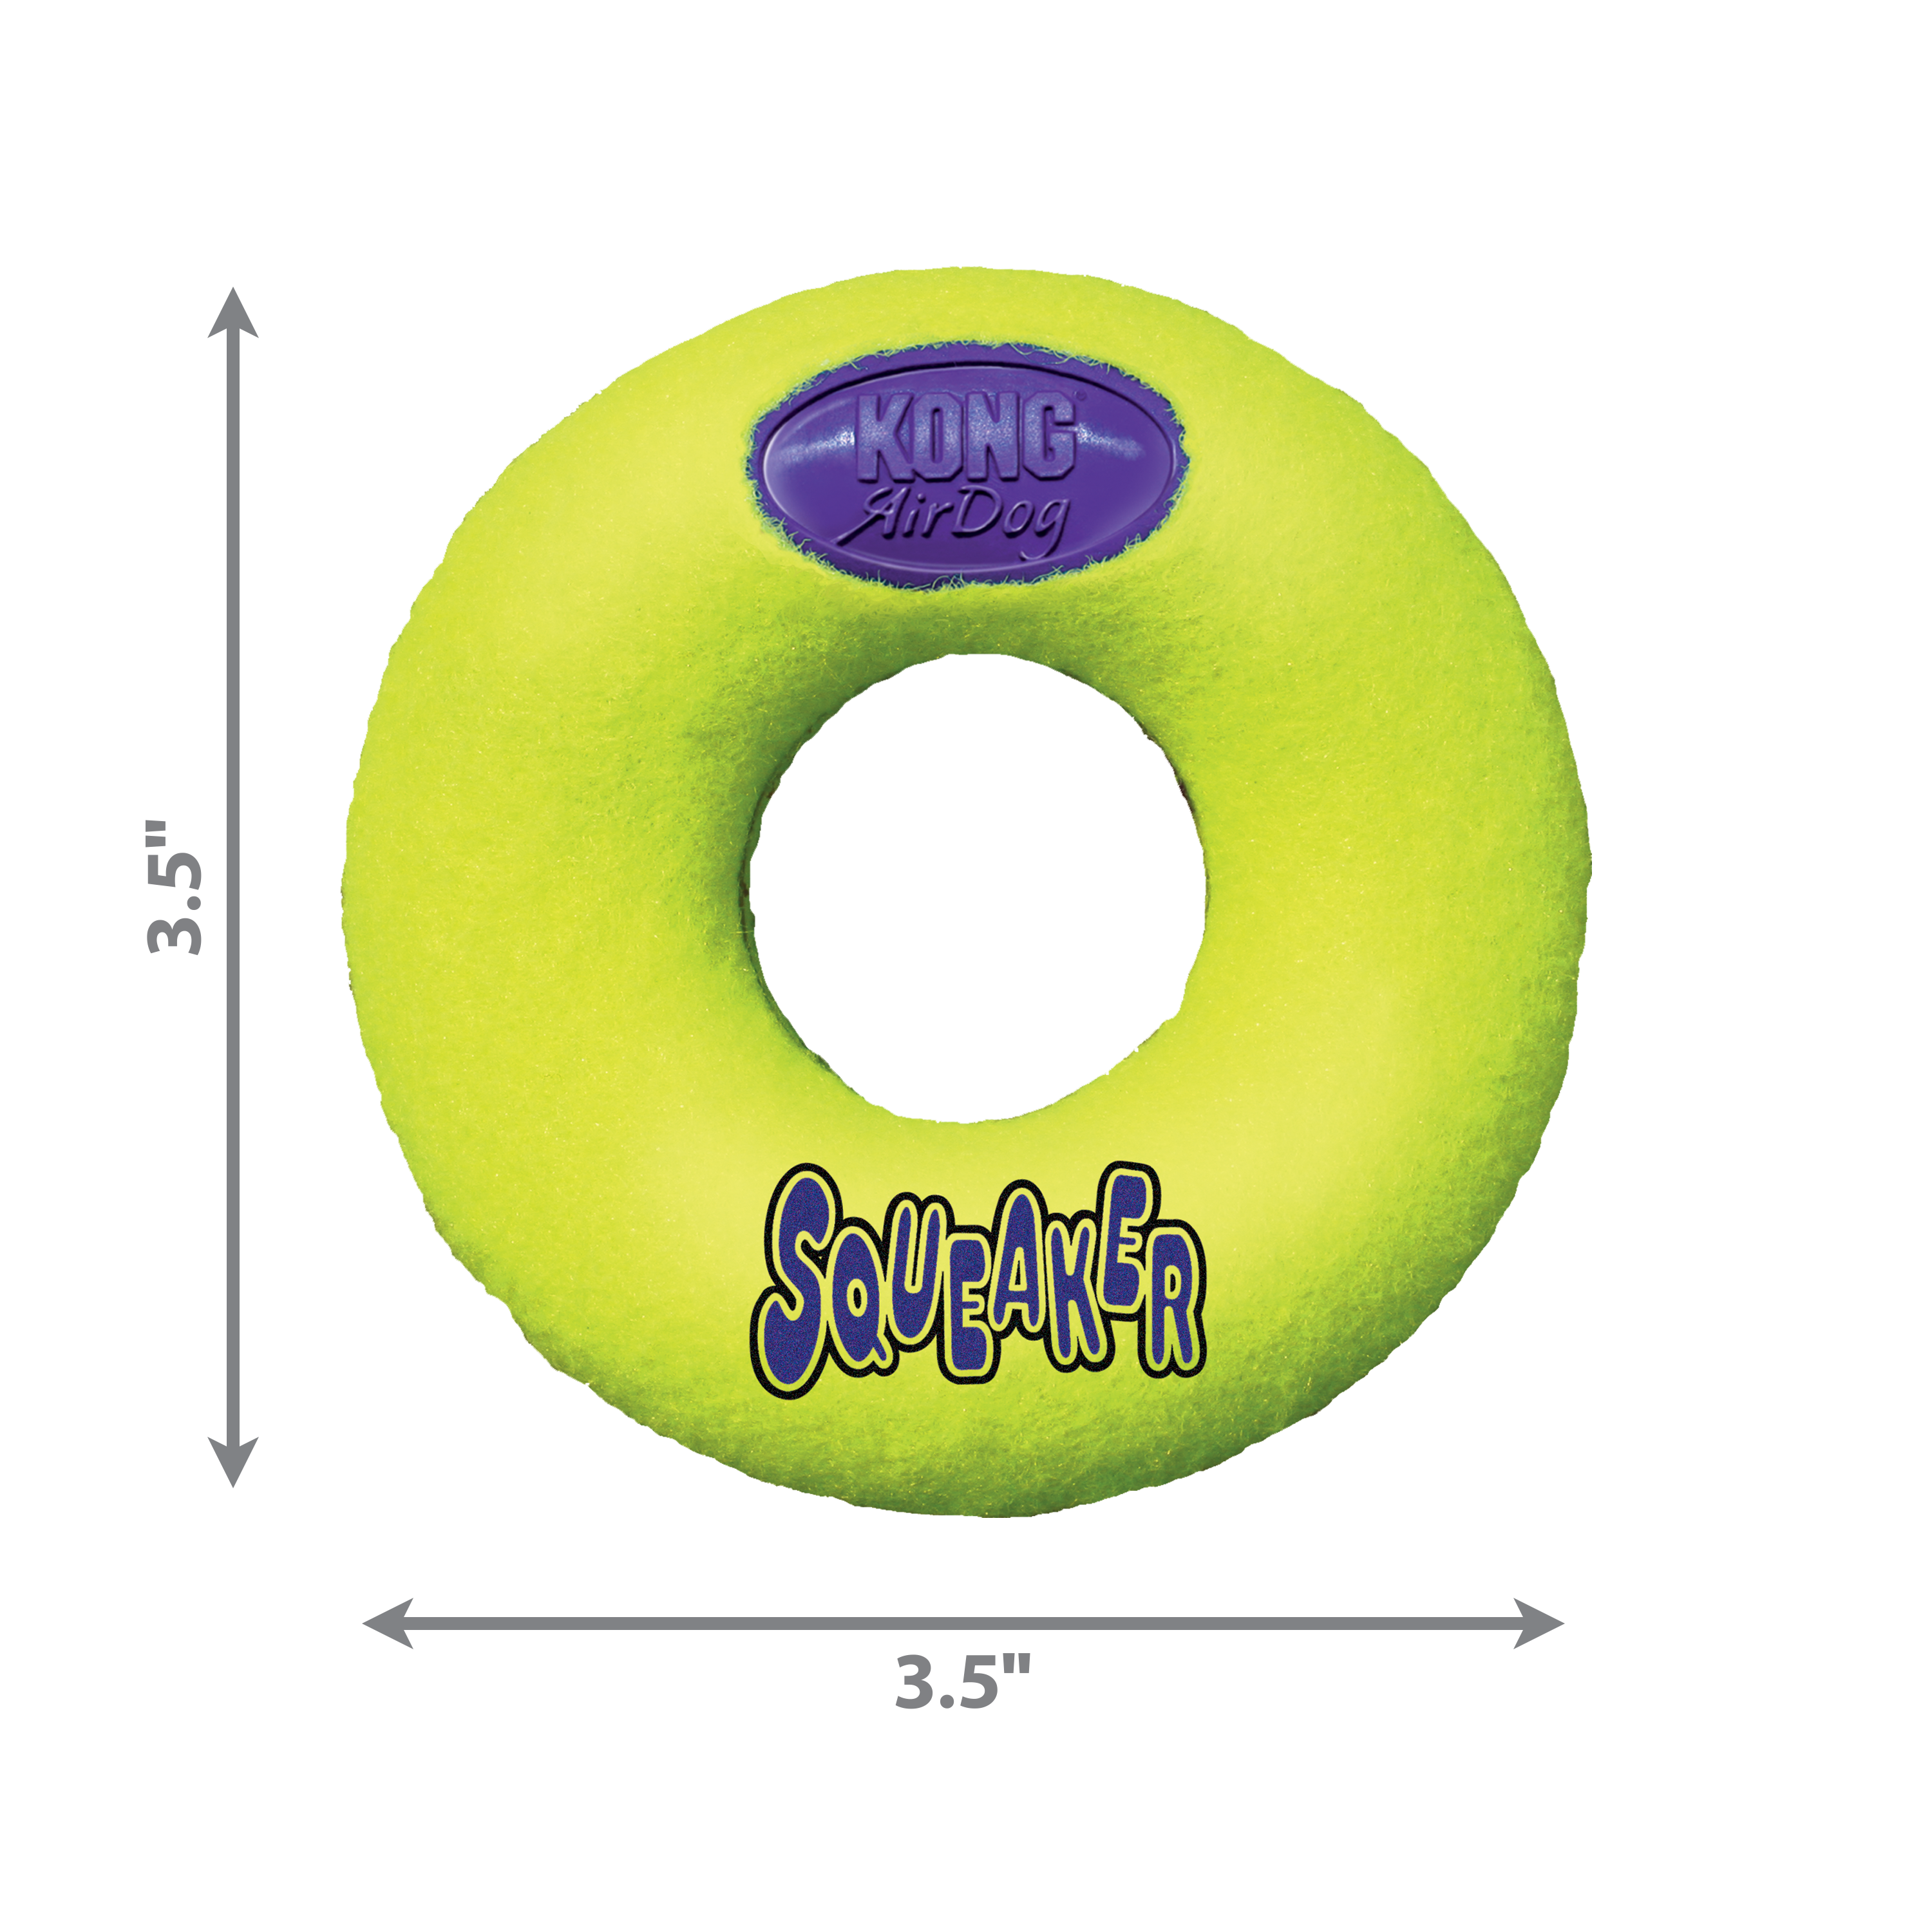 Imagem do produto AirDog Squeaker Donut dimoffpack